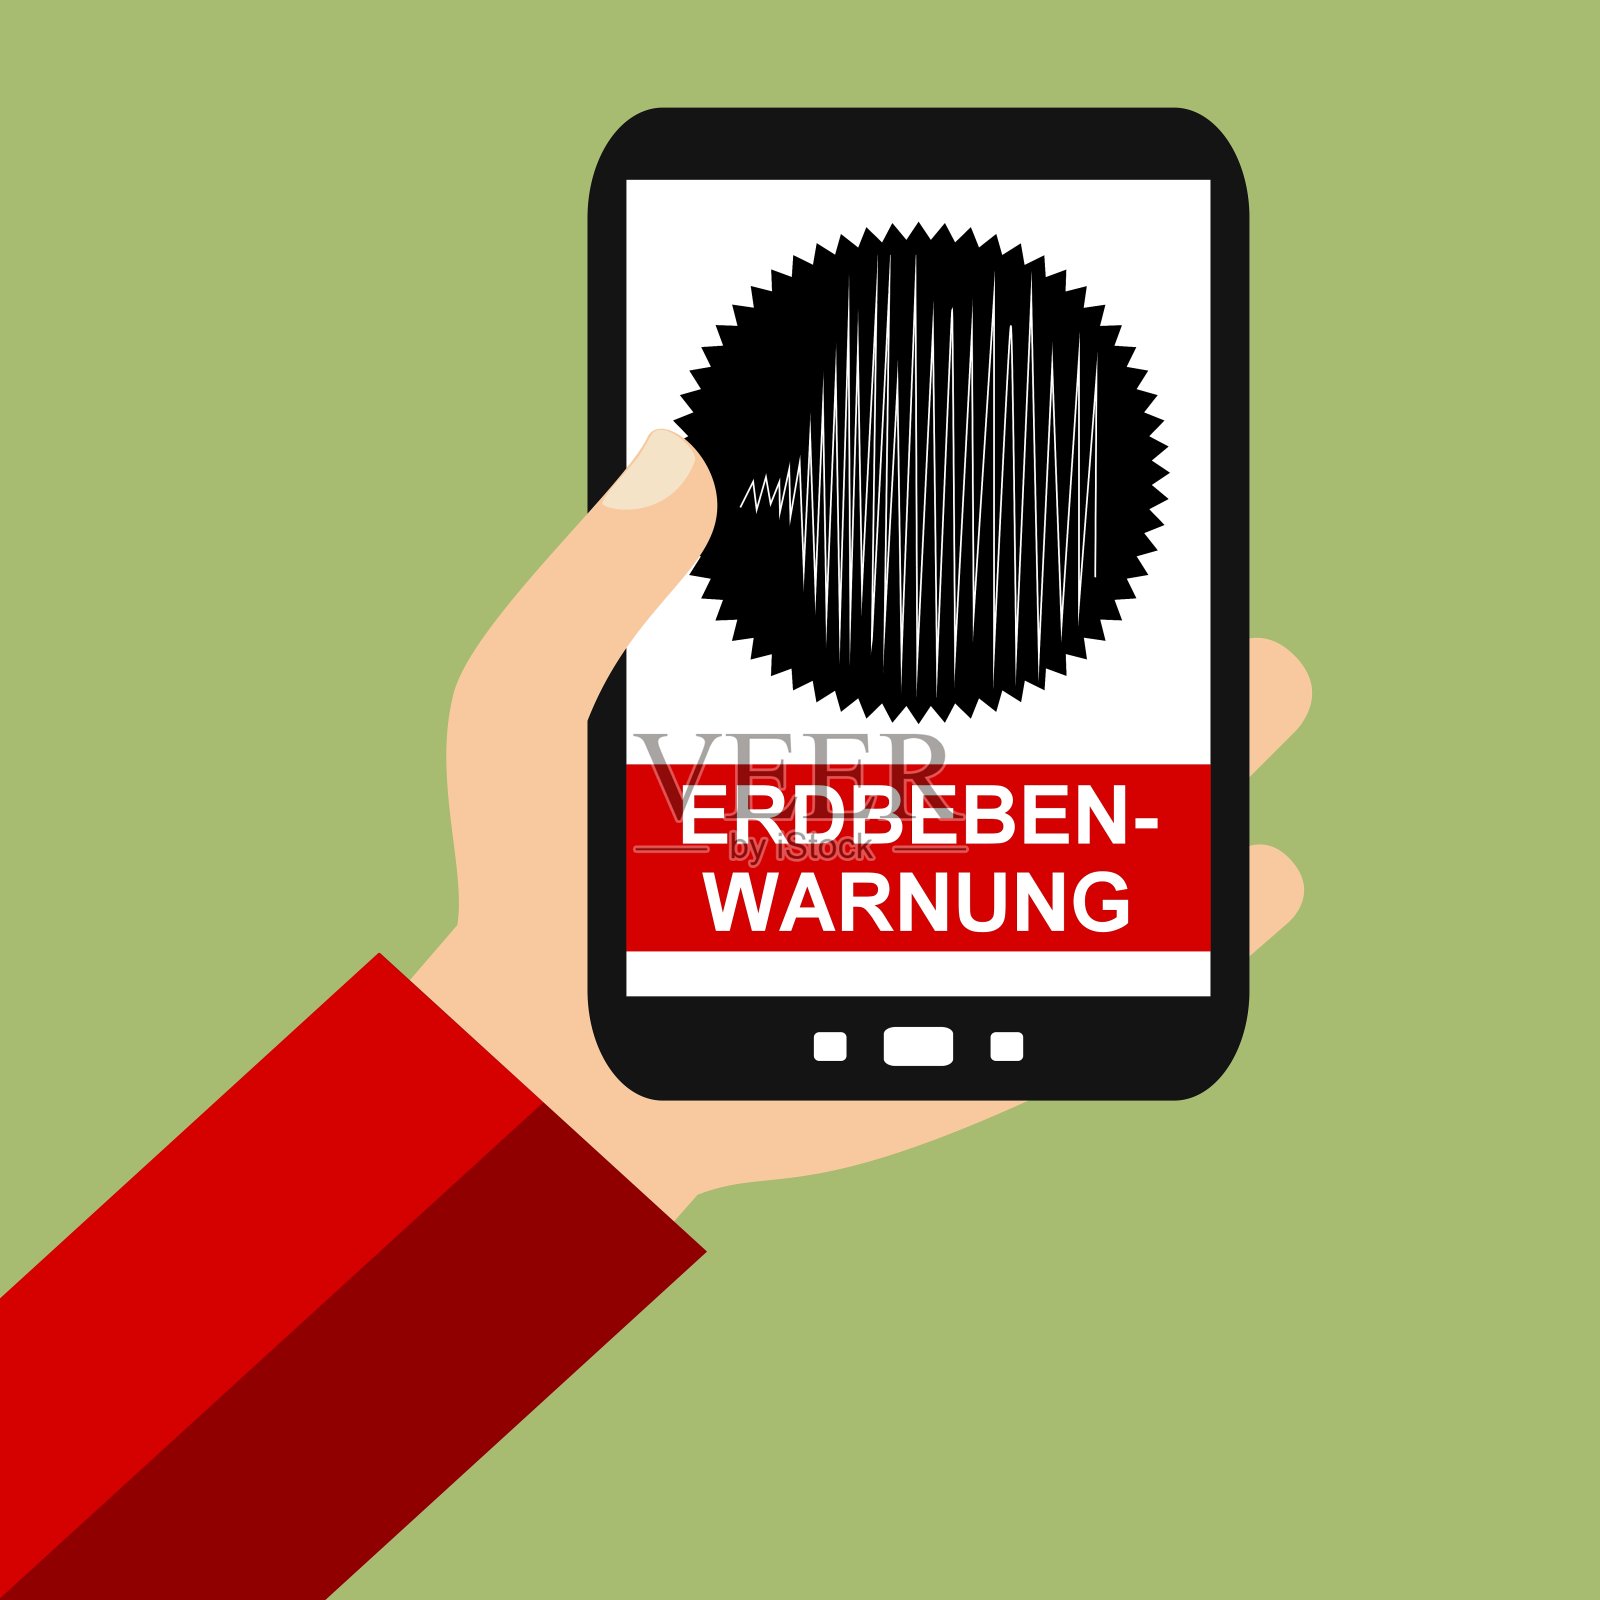 智能手机:地震预警德国-平面设计照片摄影图片